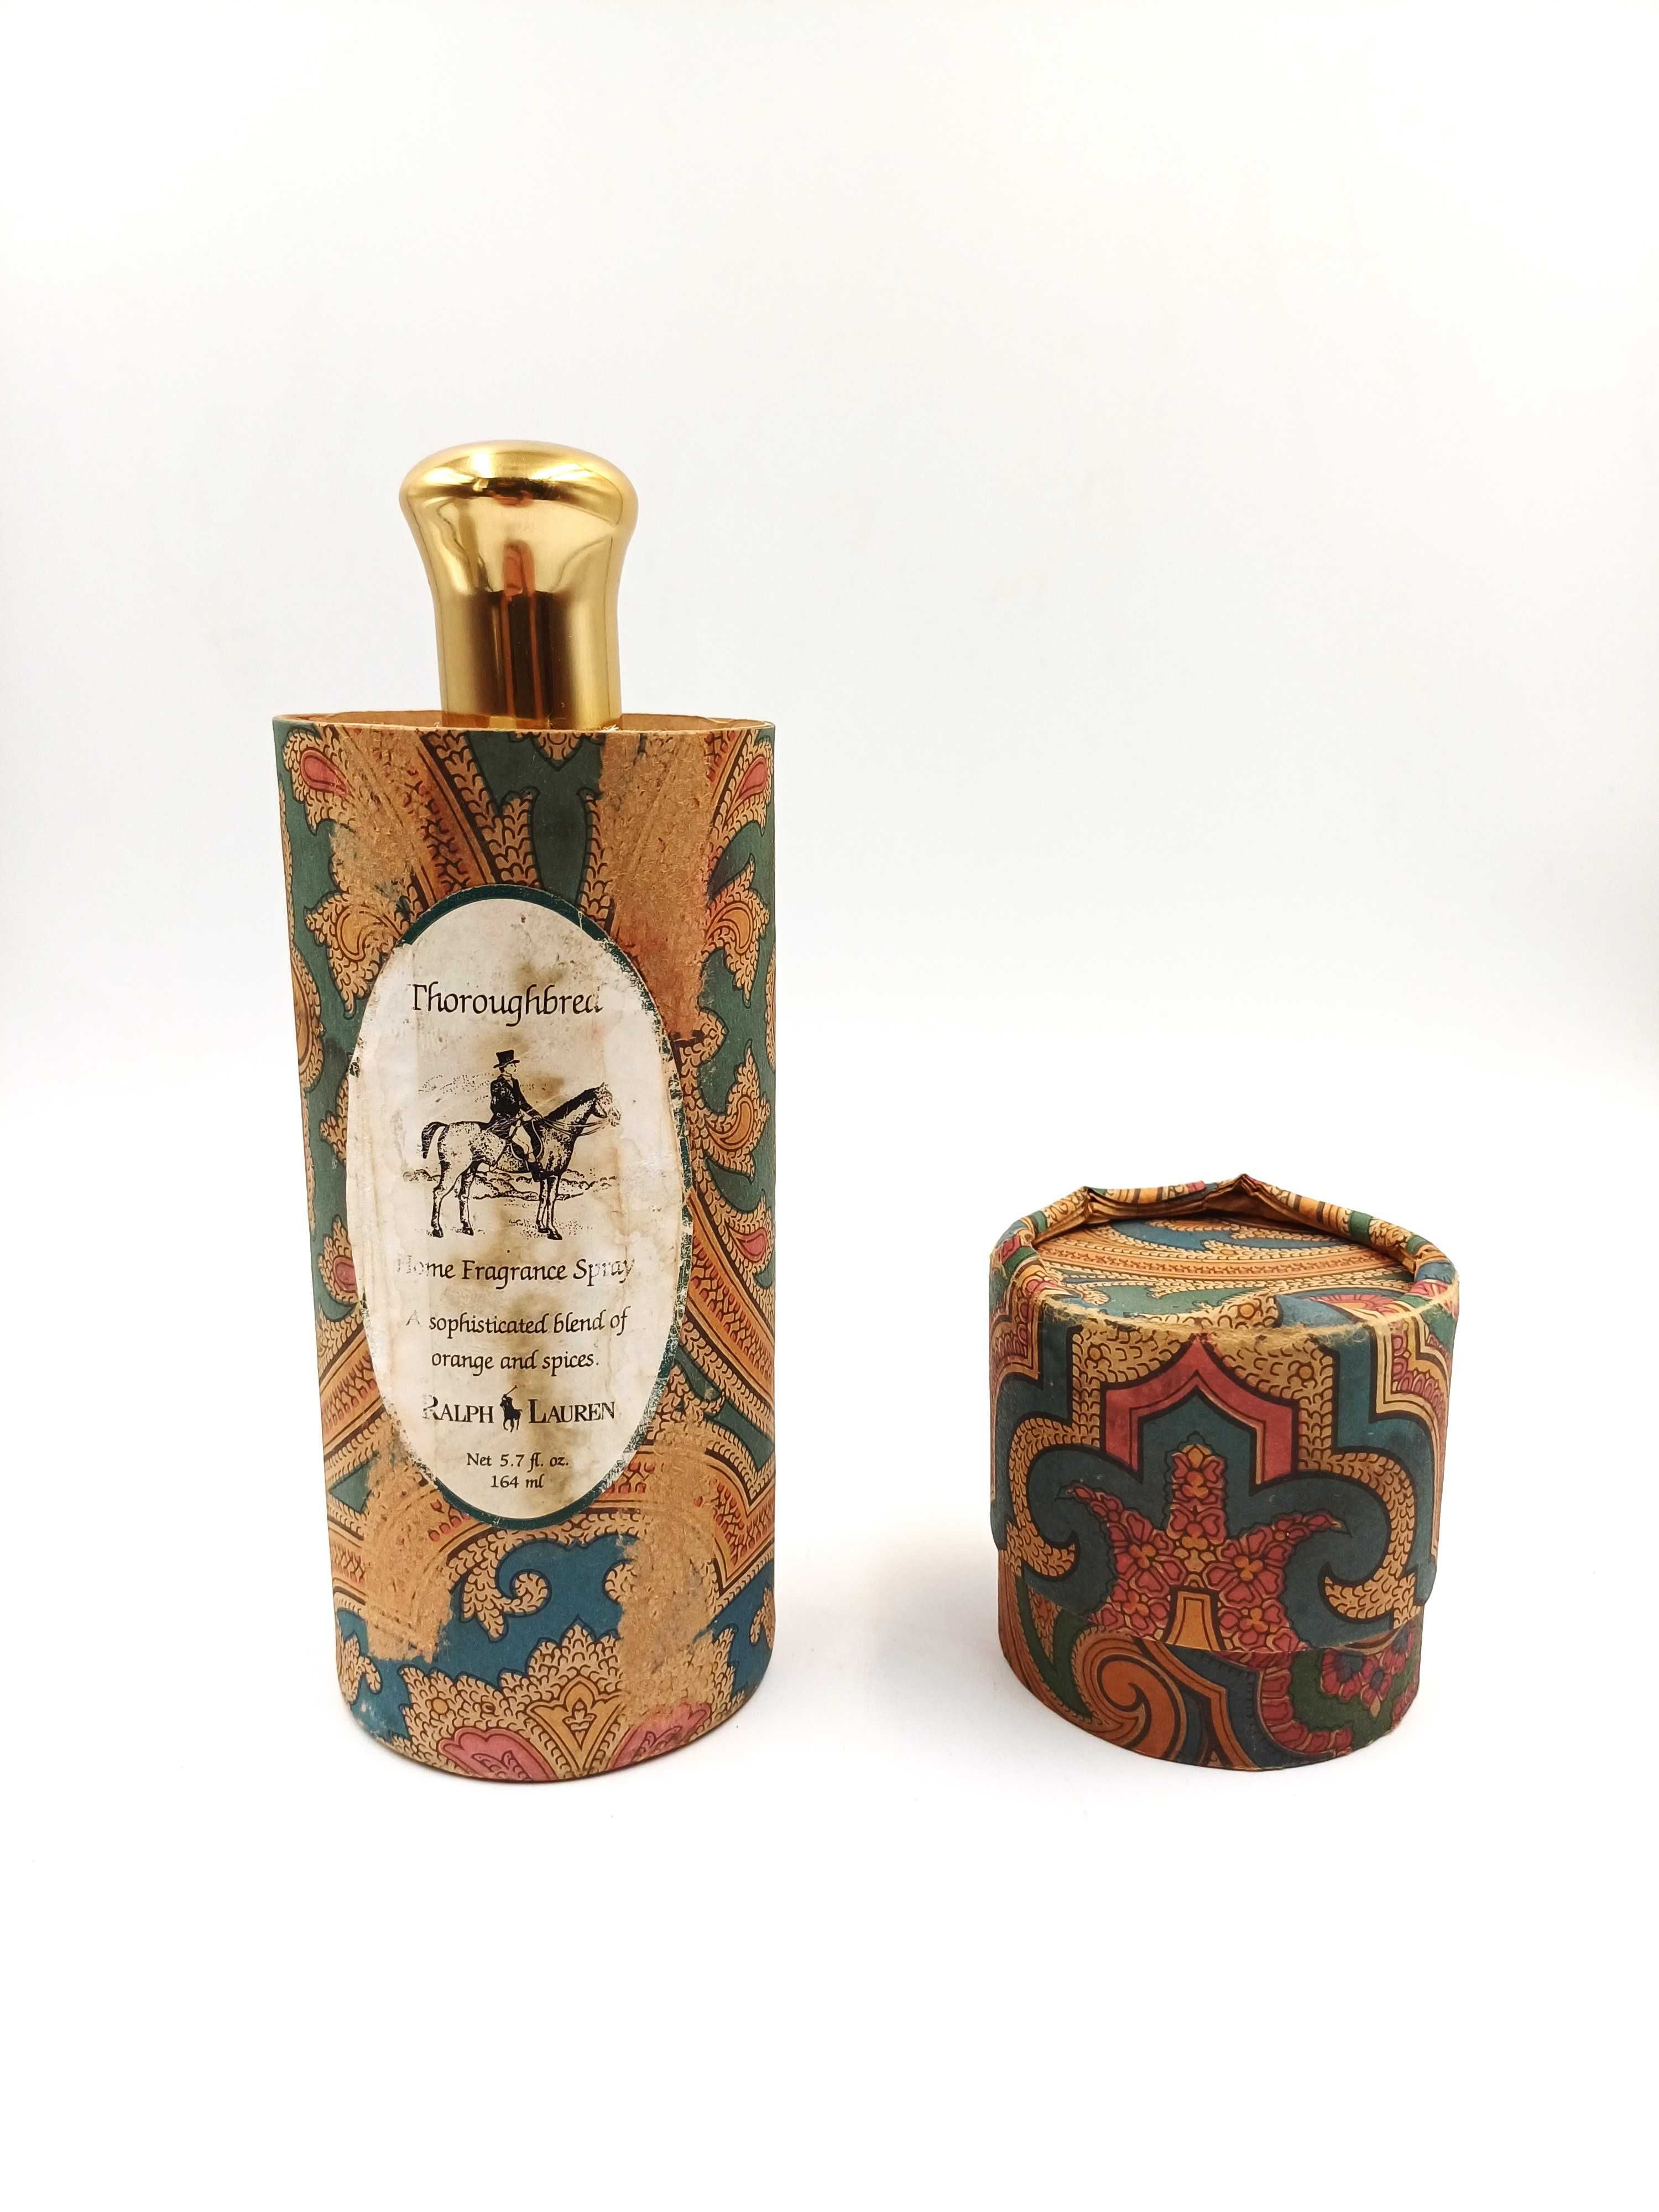 Vintage parfum de camera Ralph Lauren - Thoroughbred - 164 ml